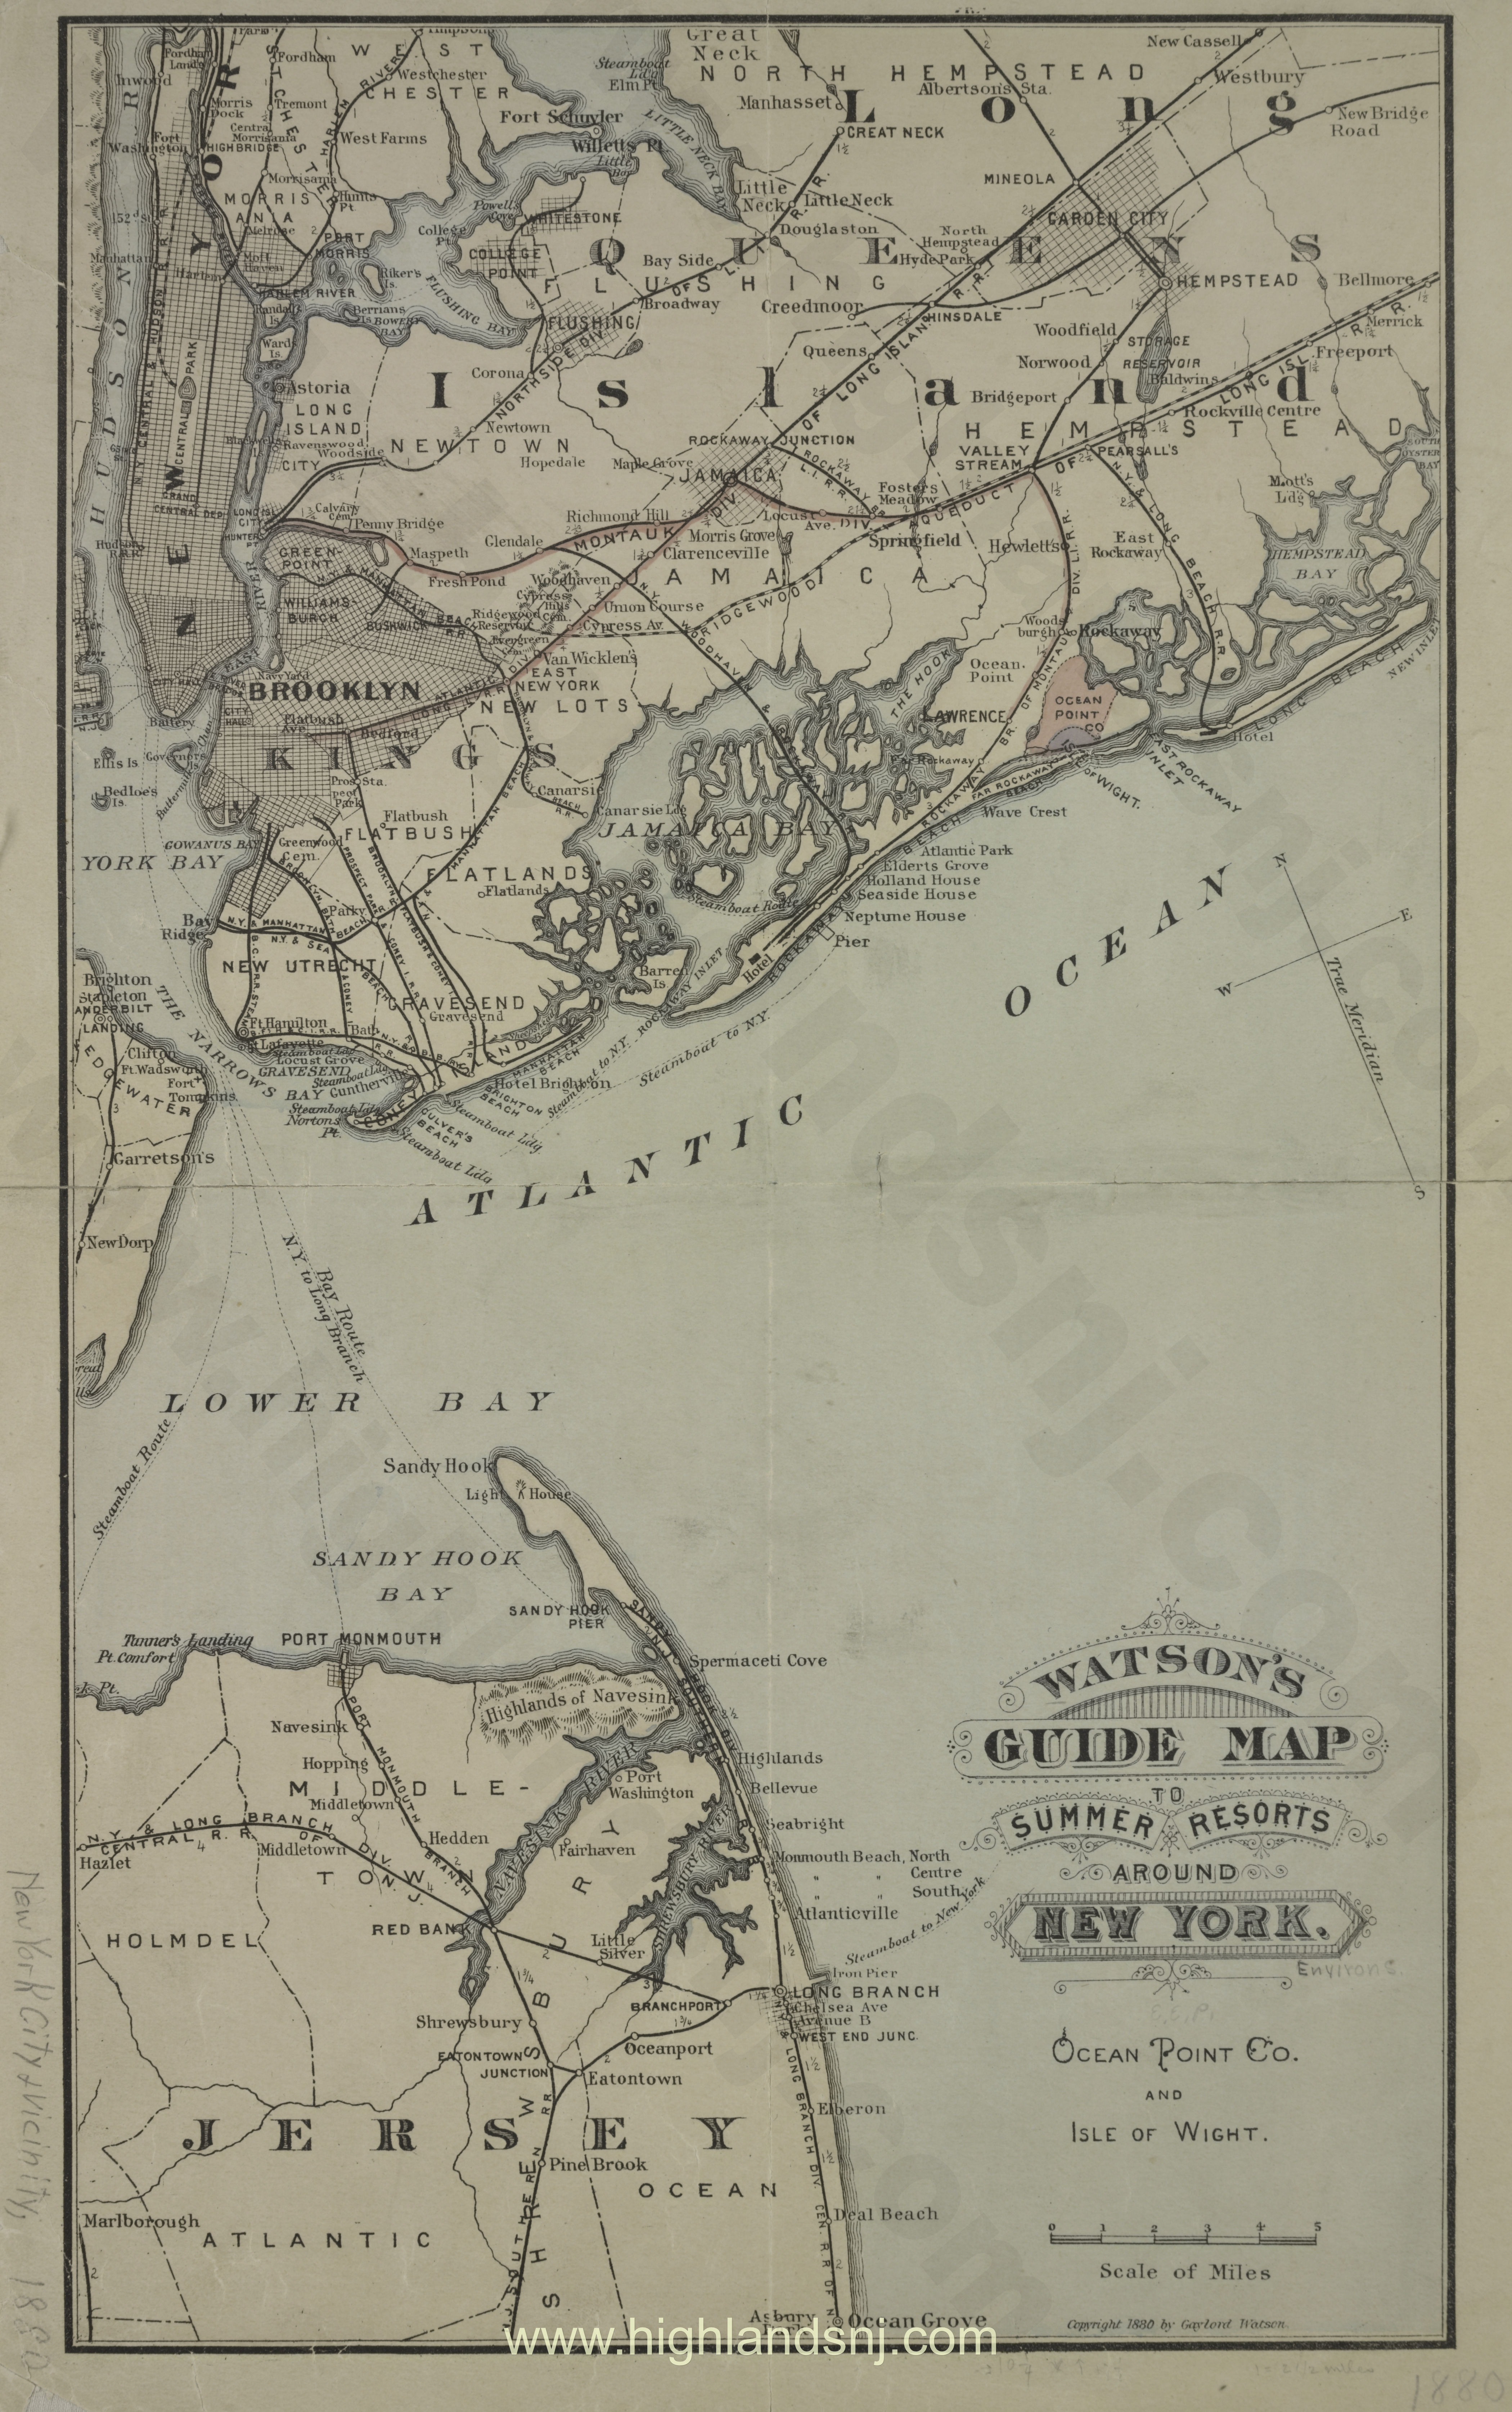 1880 Watson's guide map to summer resorts around New York